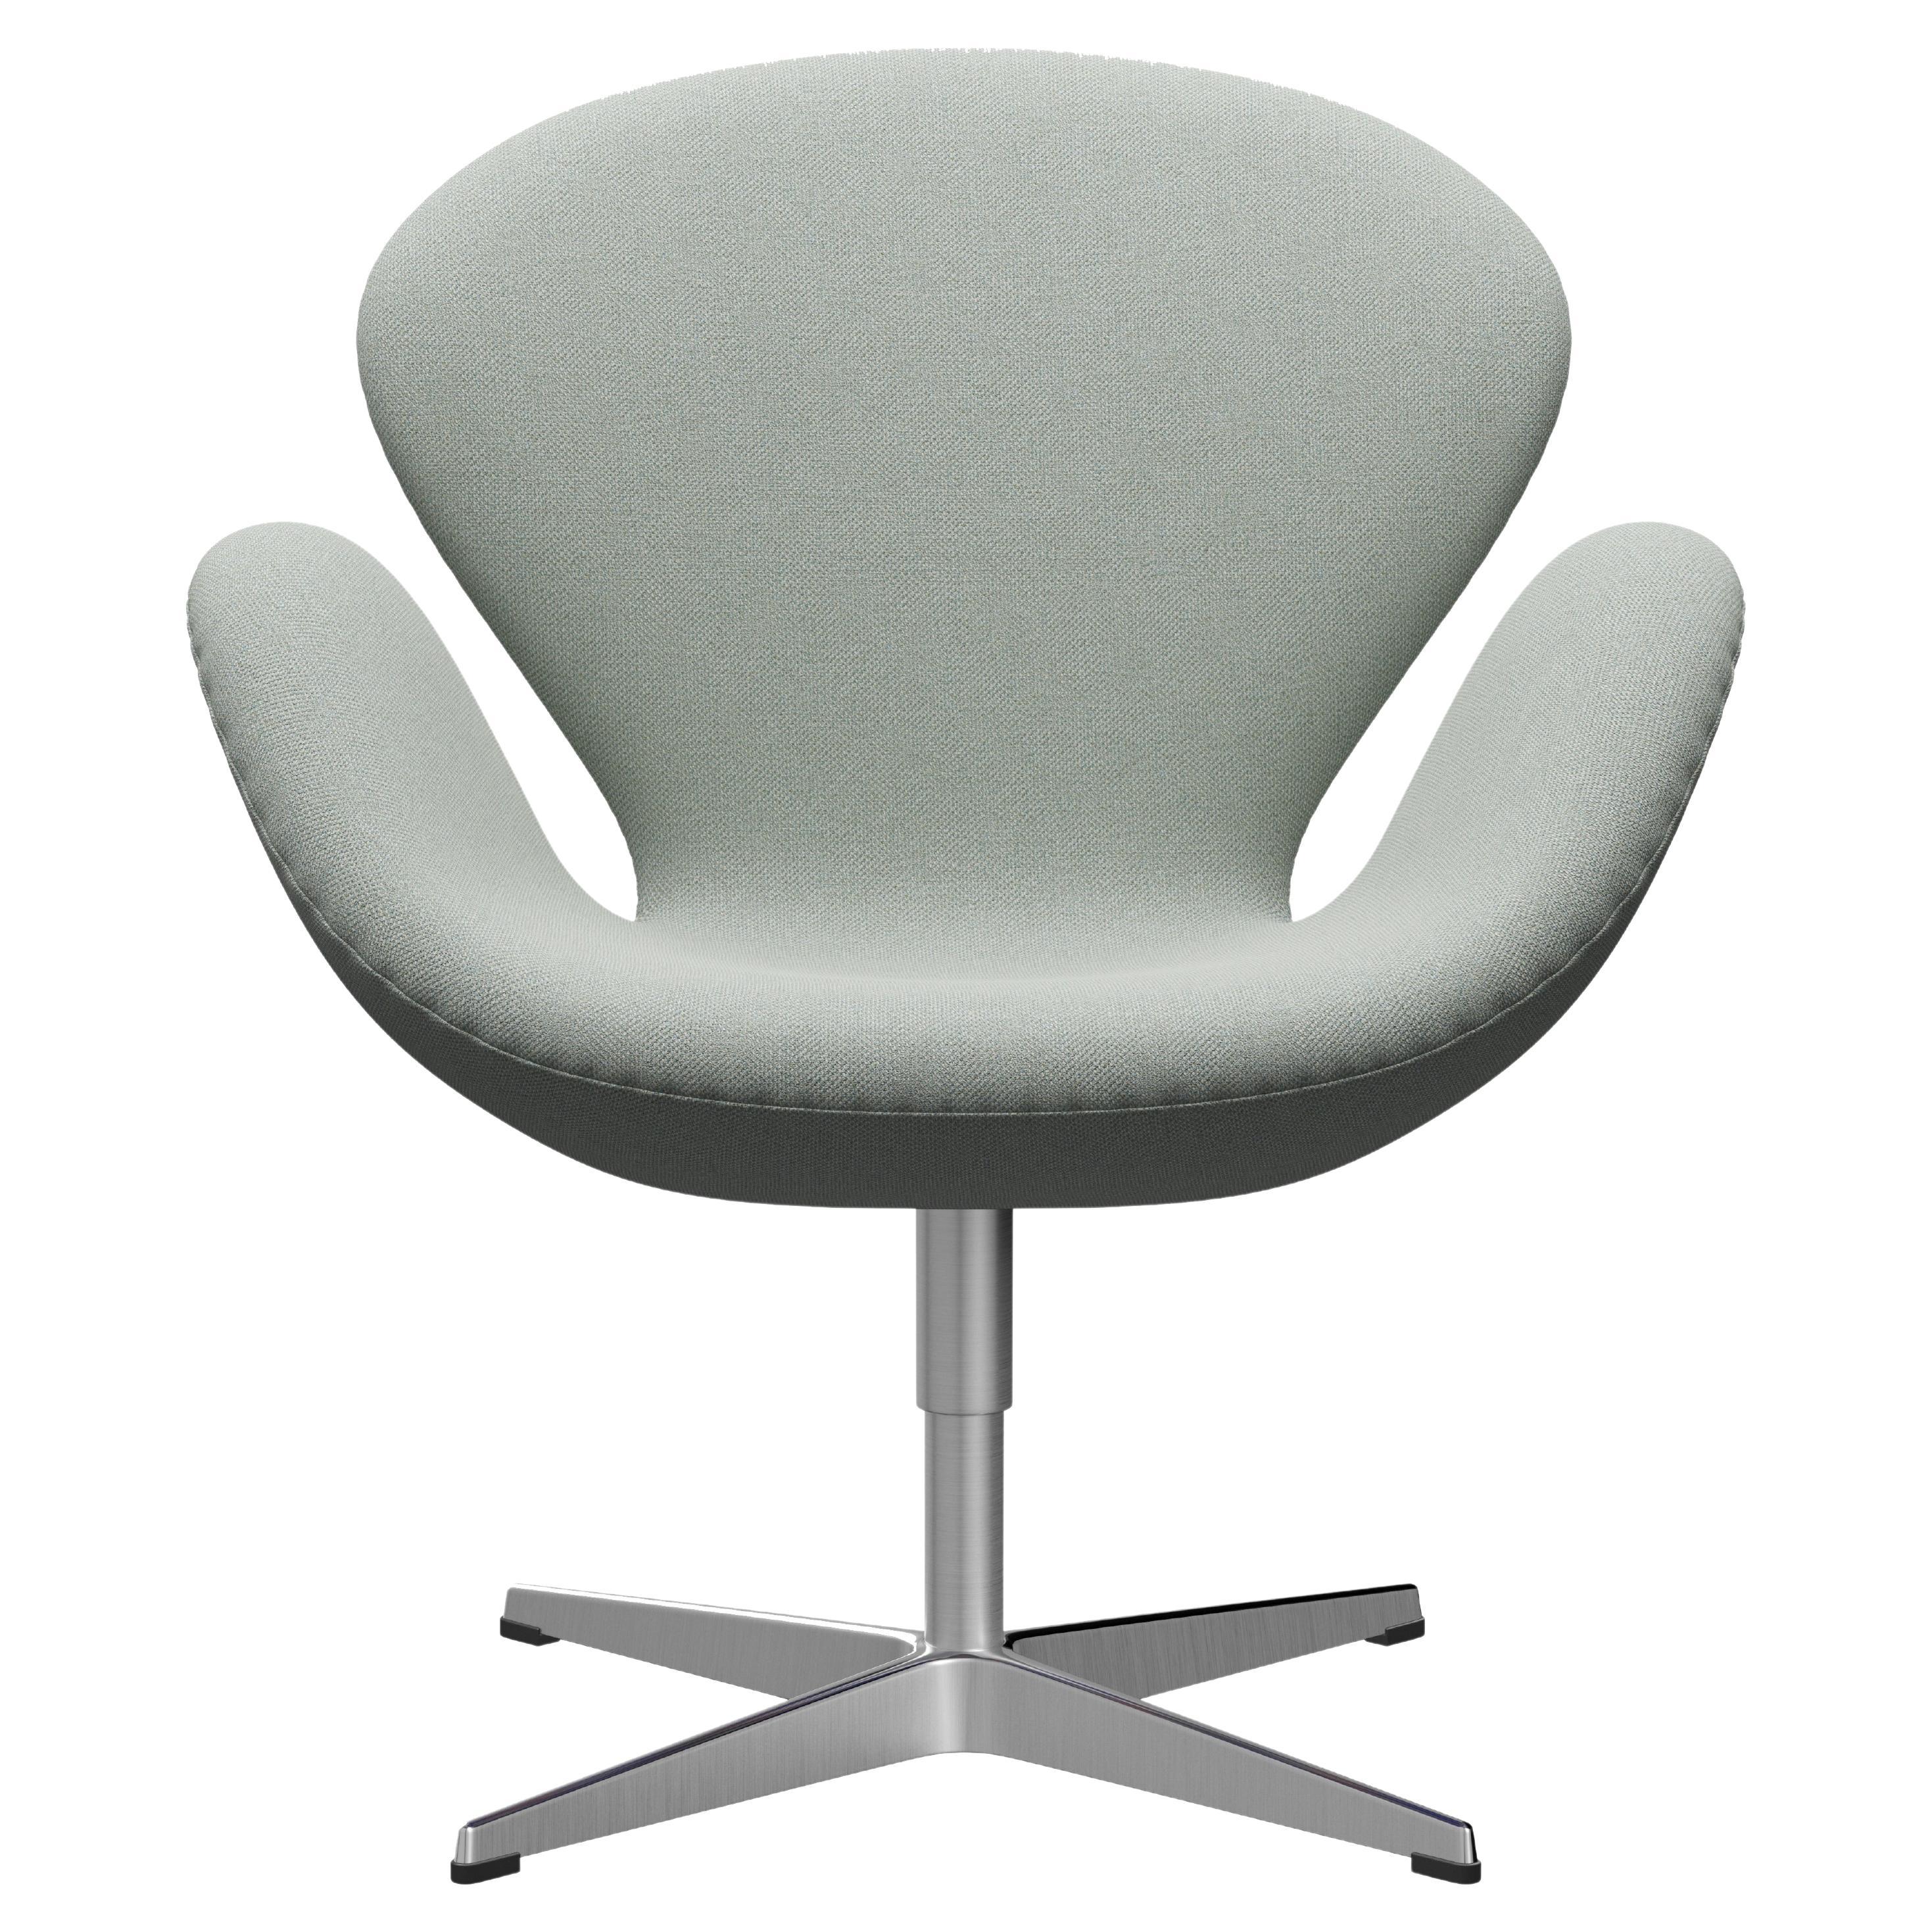 Arne Jacobsen 'Swan' Chair for Fritz Hansen in Fabric Upholstery (Cat. 2)